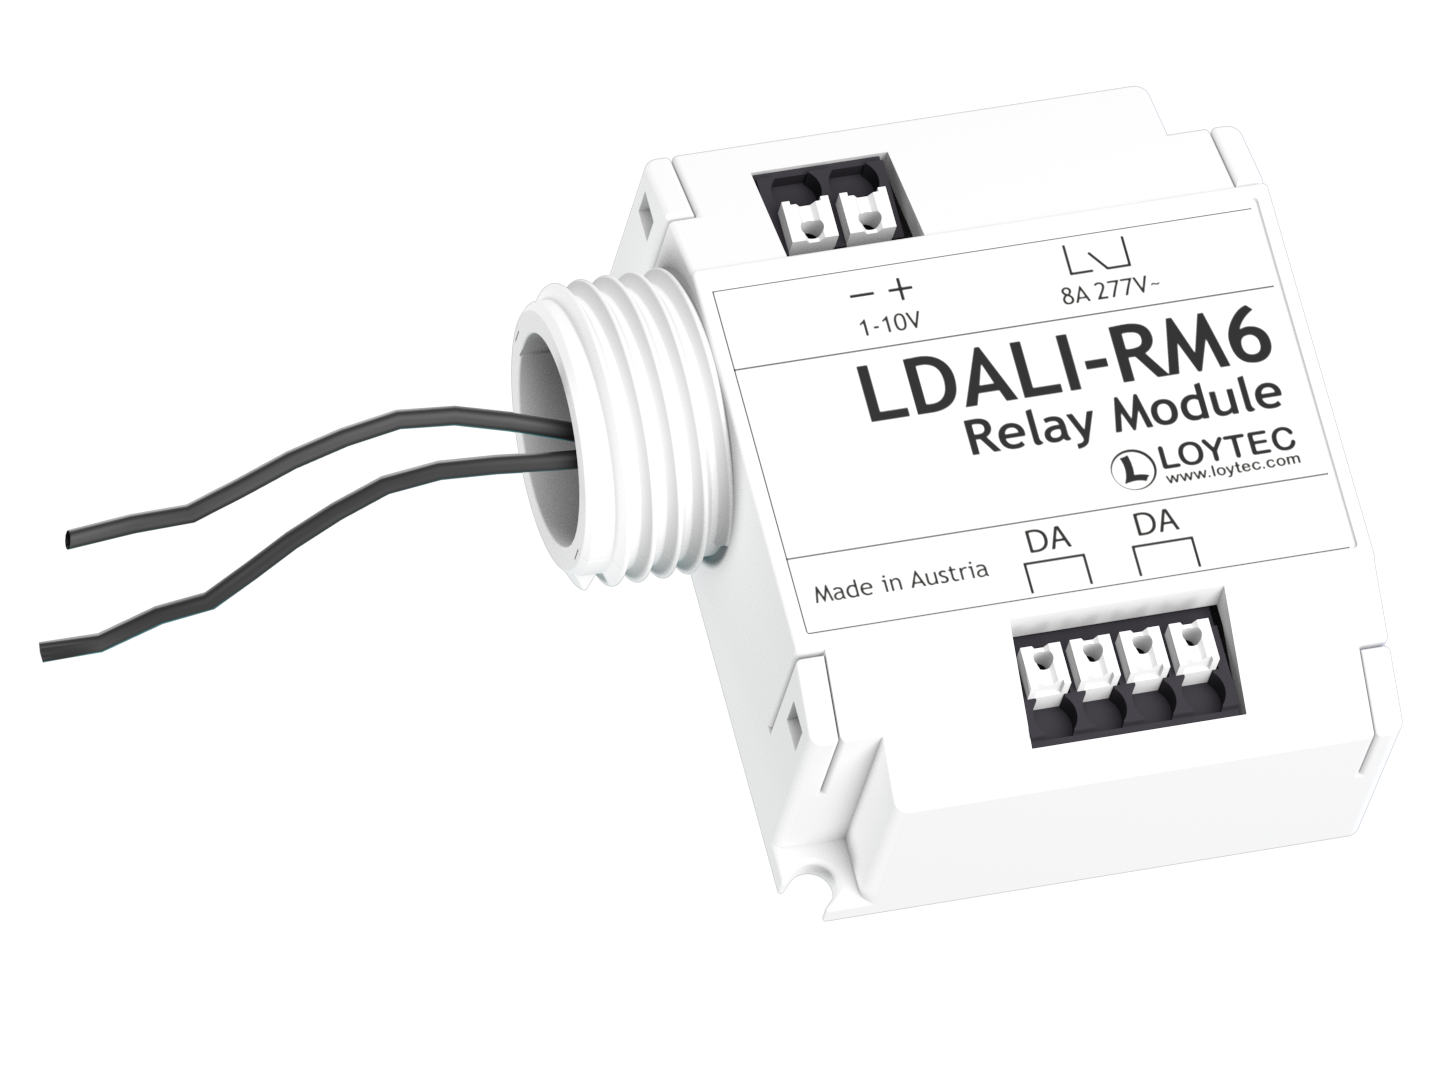 LDALI‑RM6 Relay Modules